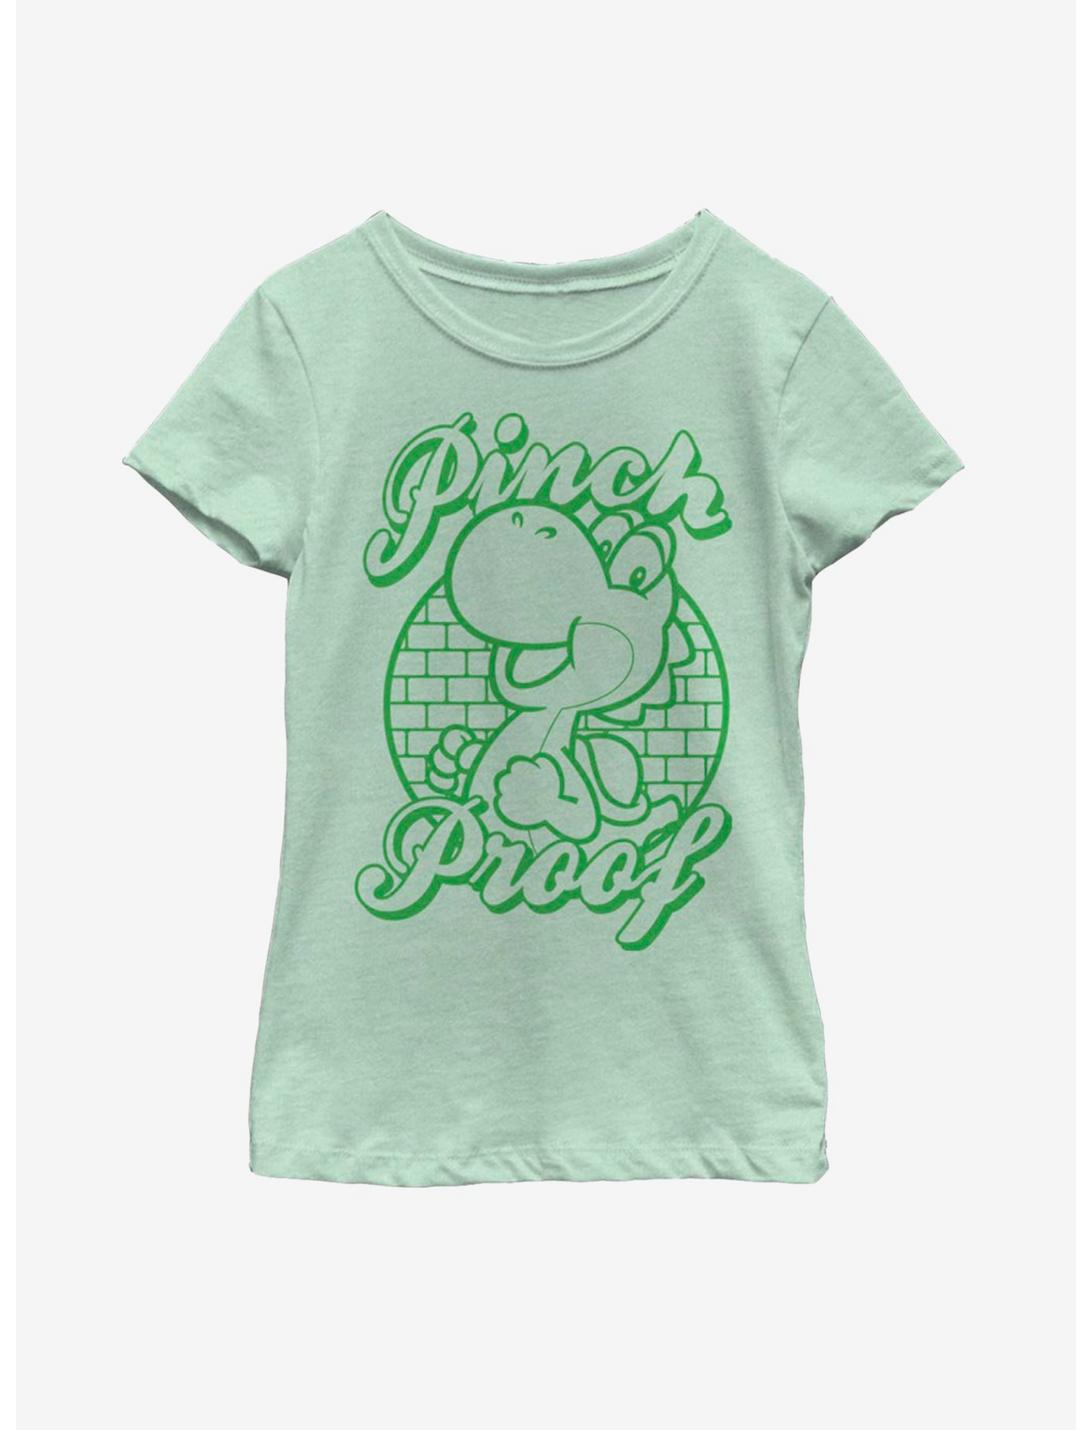 Nintendo Mario Pinch Proof Yoshi Youth Girls T-Shirt, MINT, hi-res